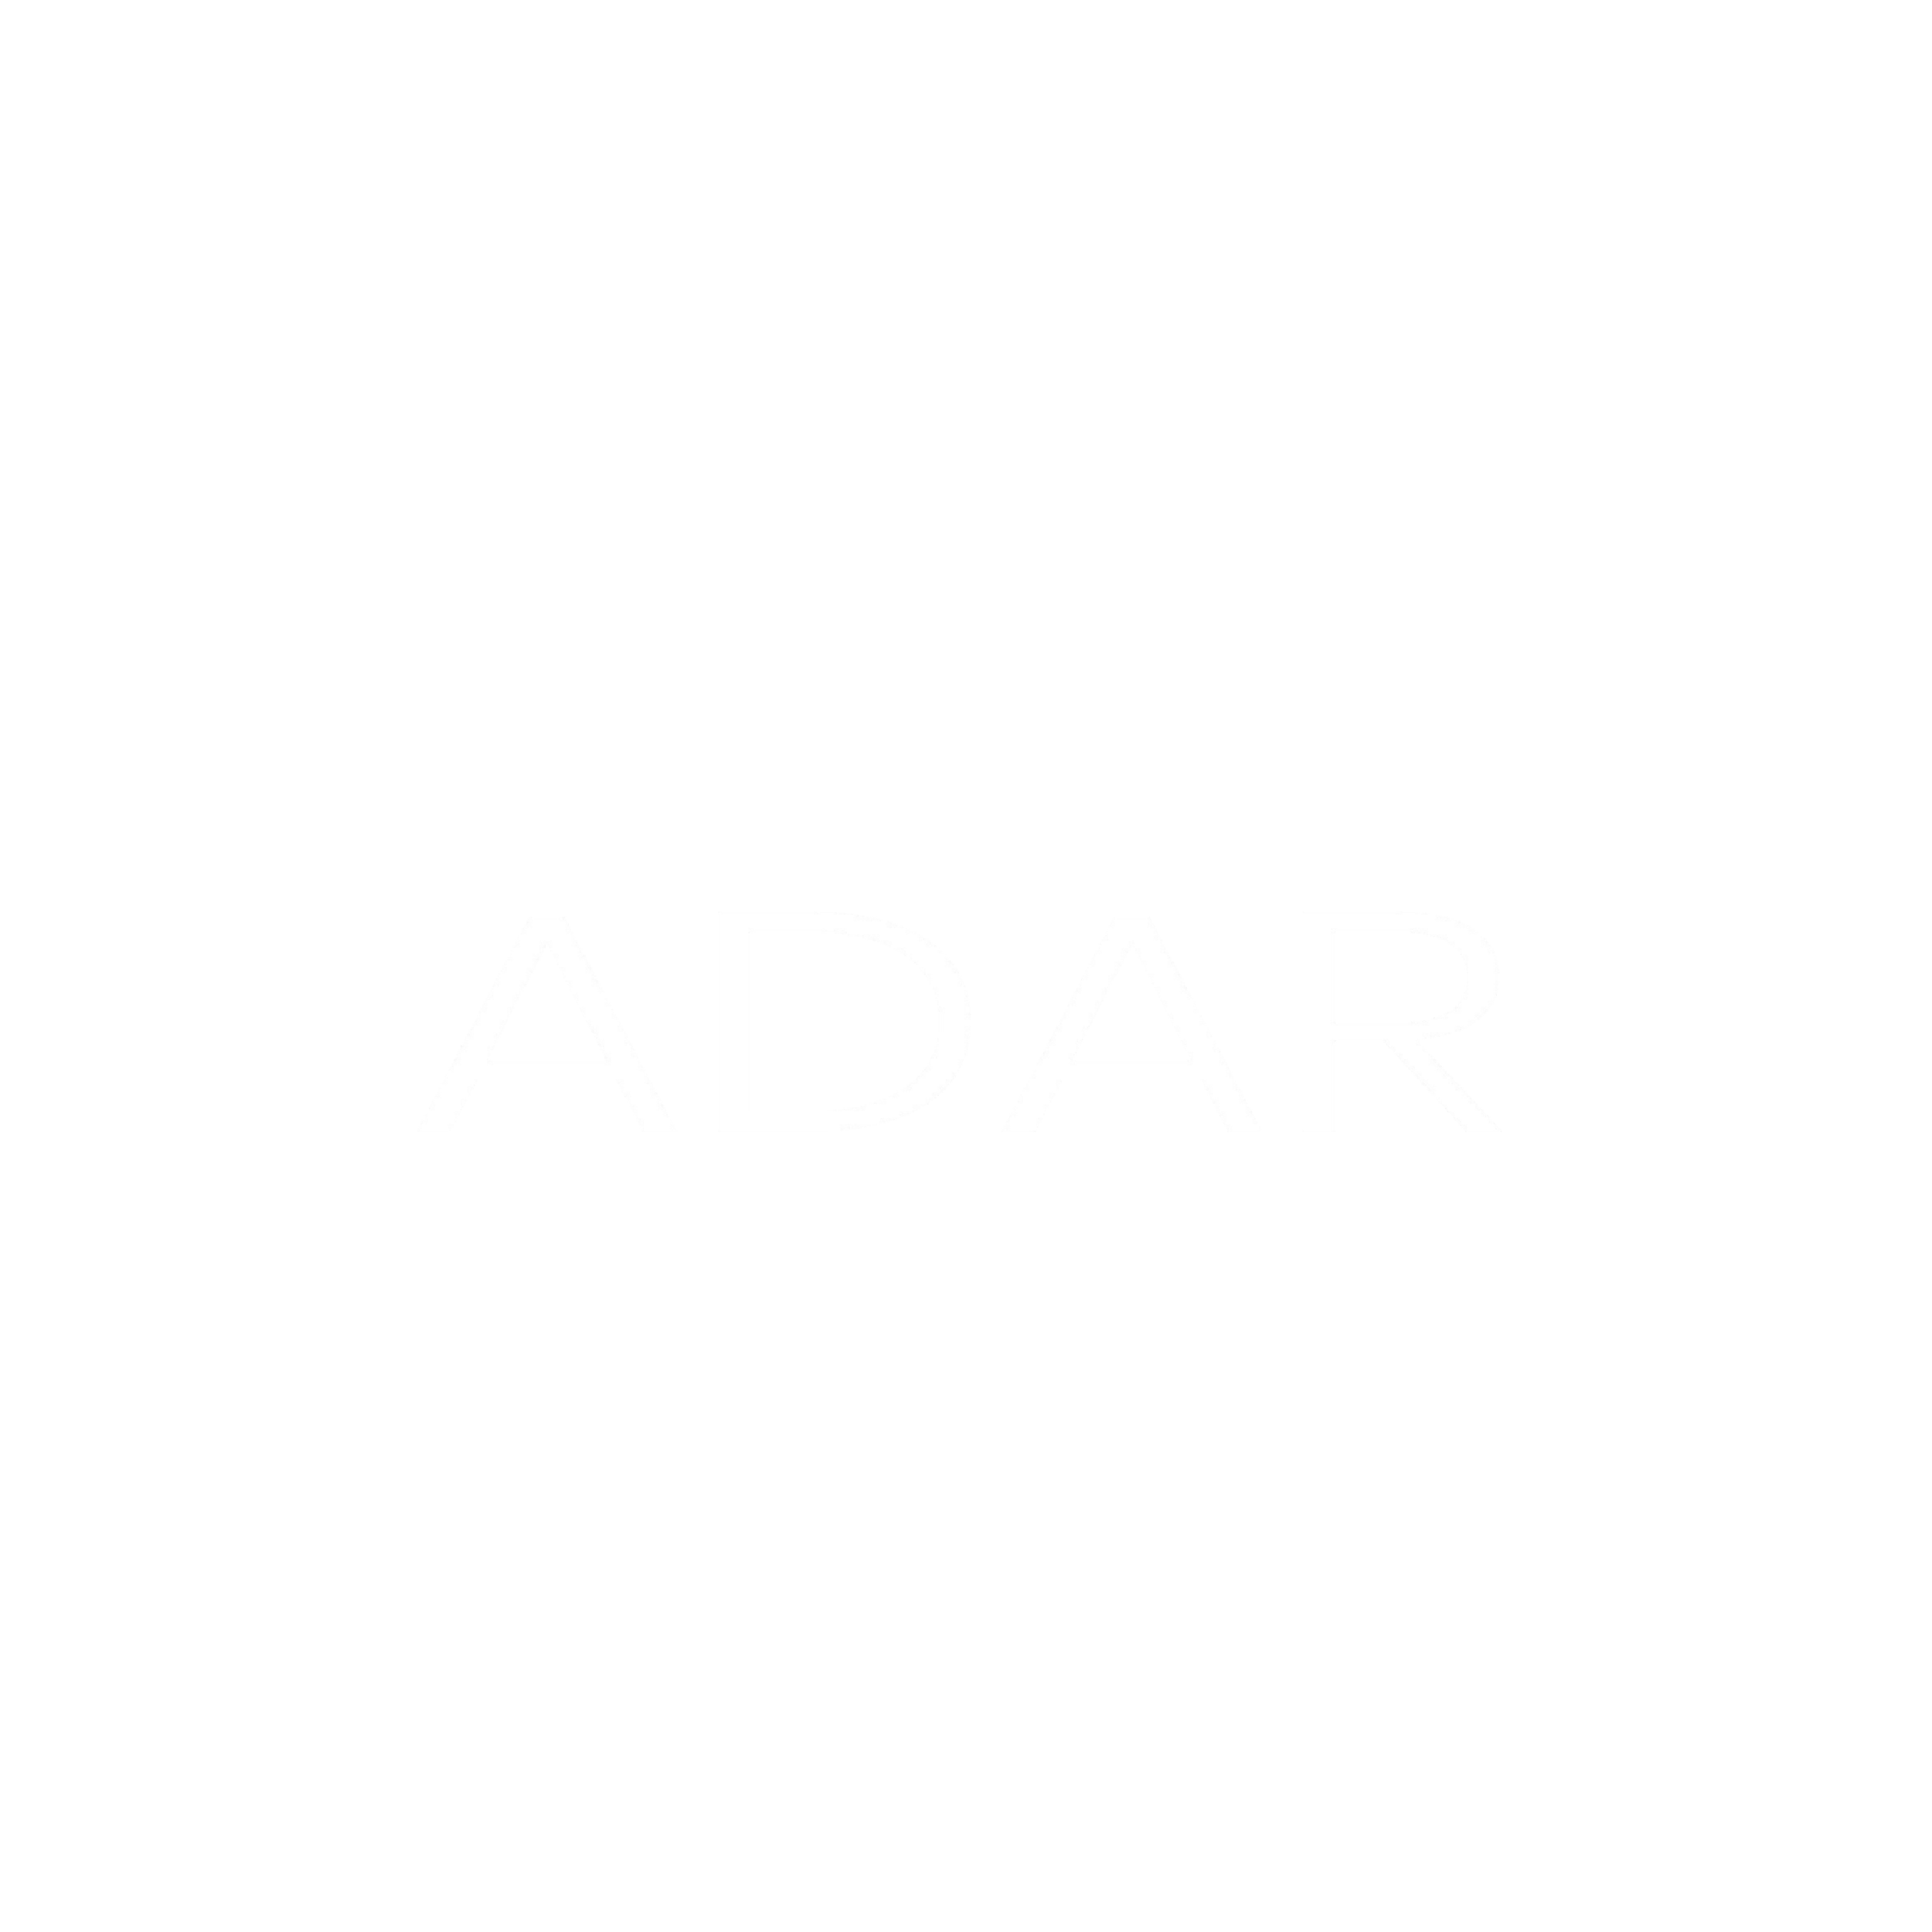 Adar at Golden Gate